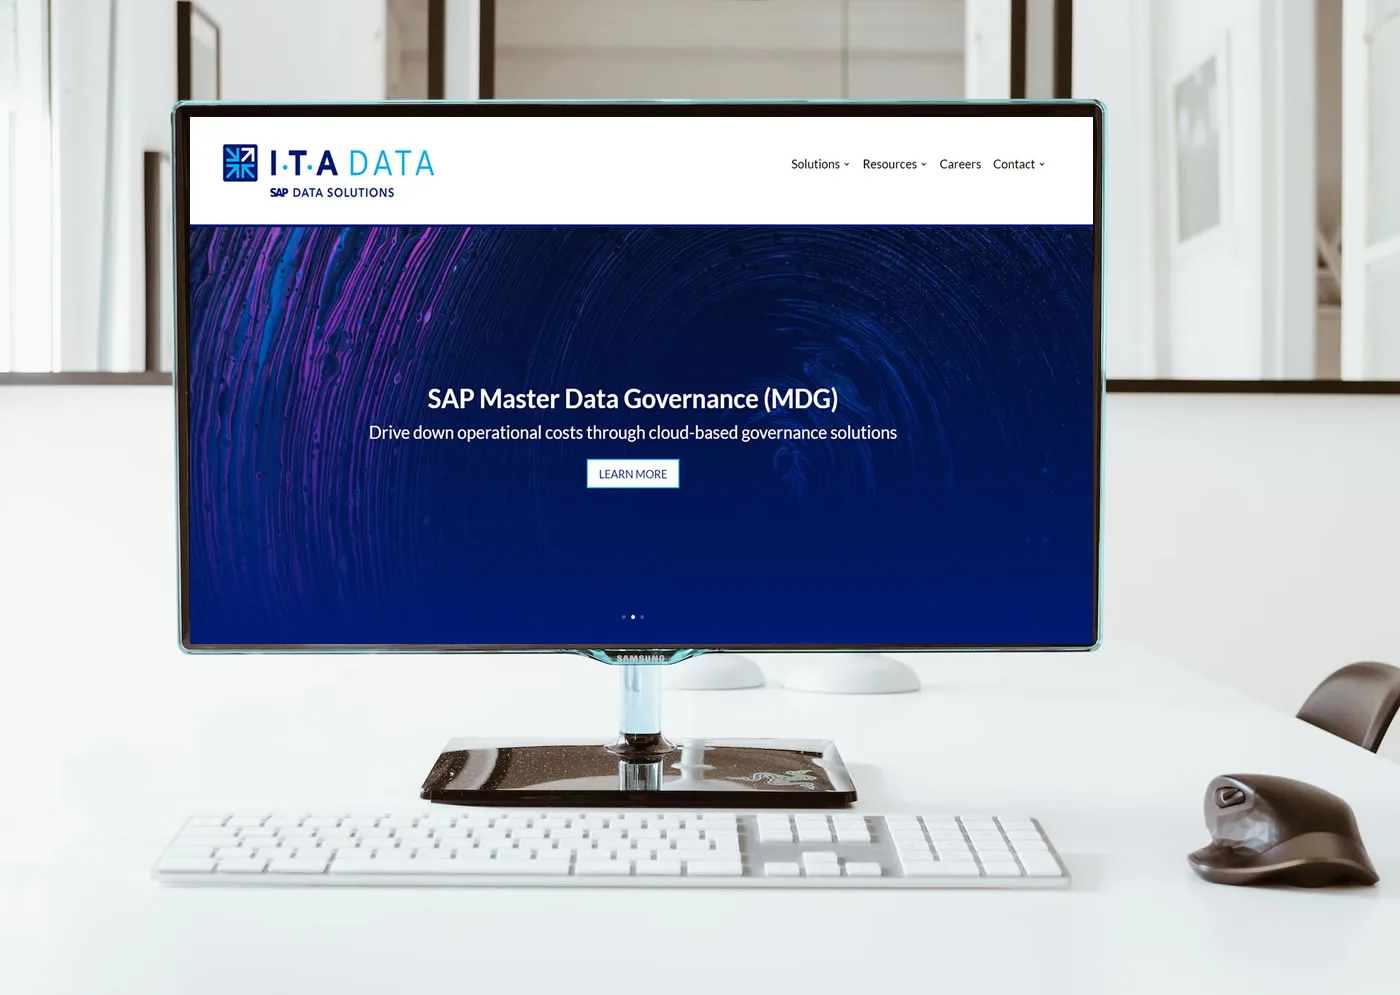 ita-data-website-design-colewebdev